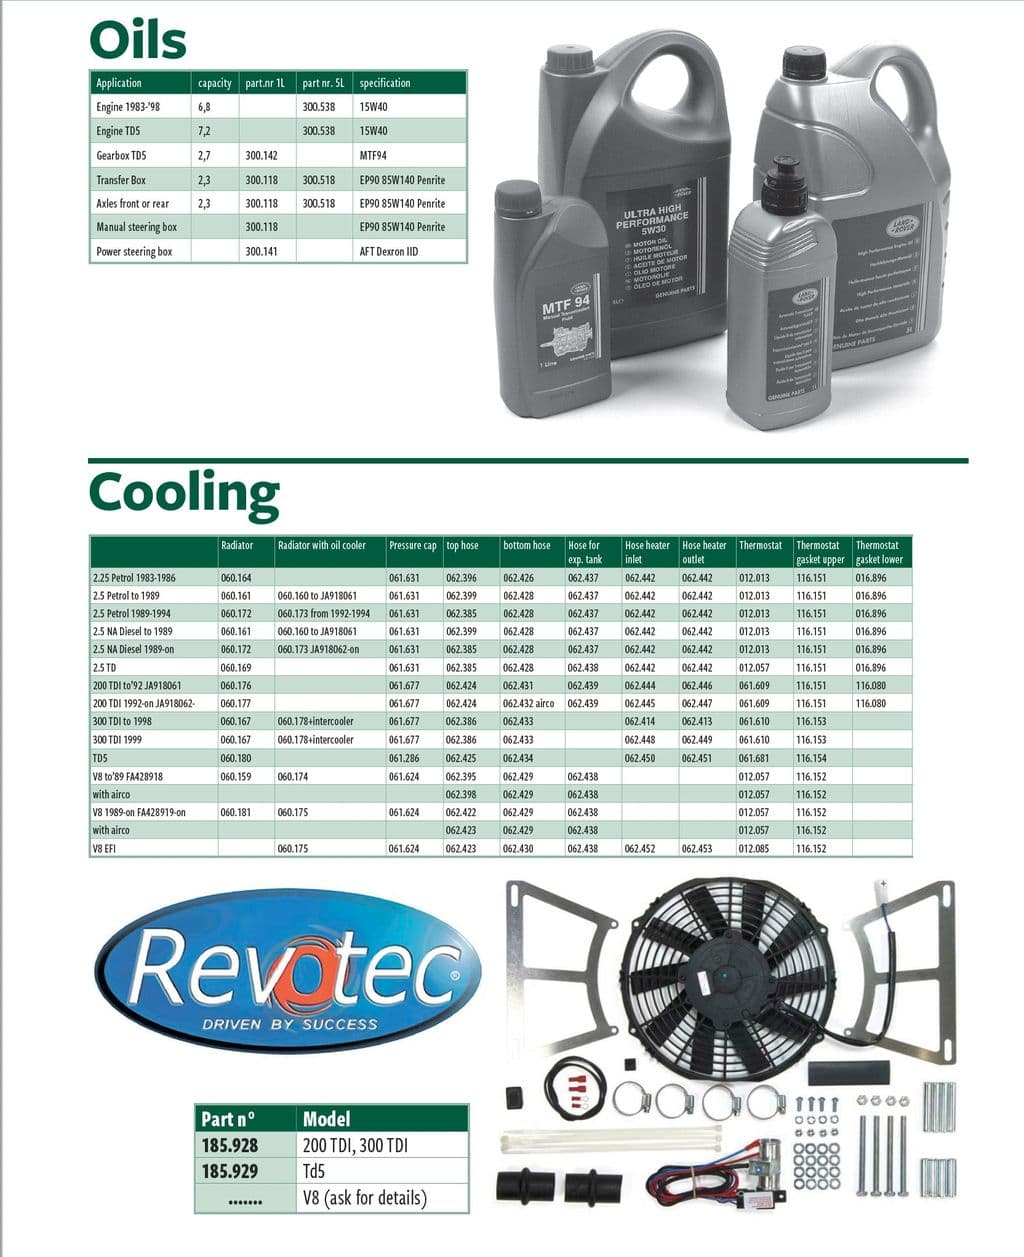 Oils & cooling - Engine chlazení upgrade - Chlazení motoru - Land Rover Defender 90-110 1984-2006 - Oils & cooling - 1